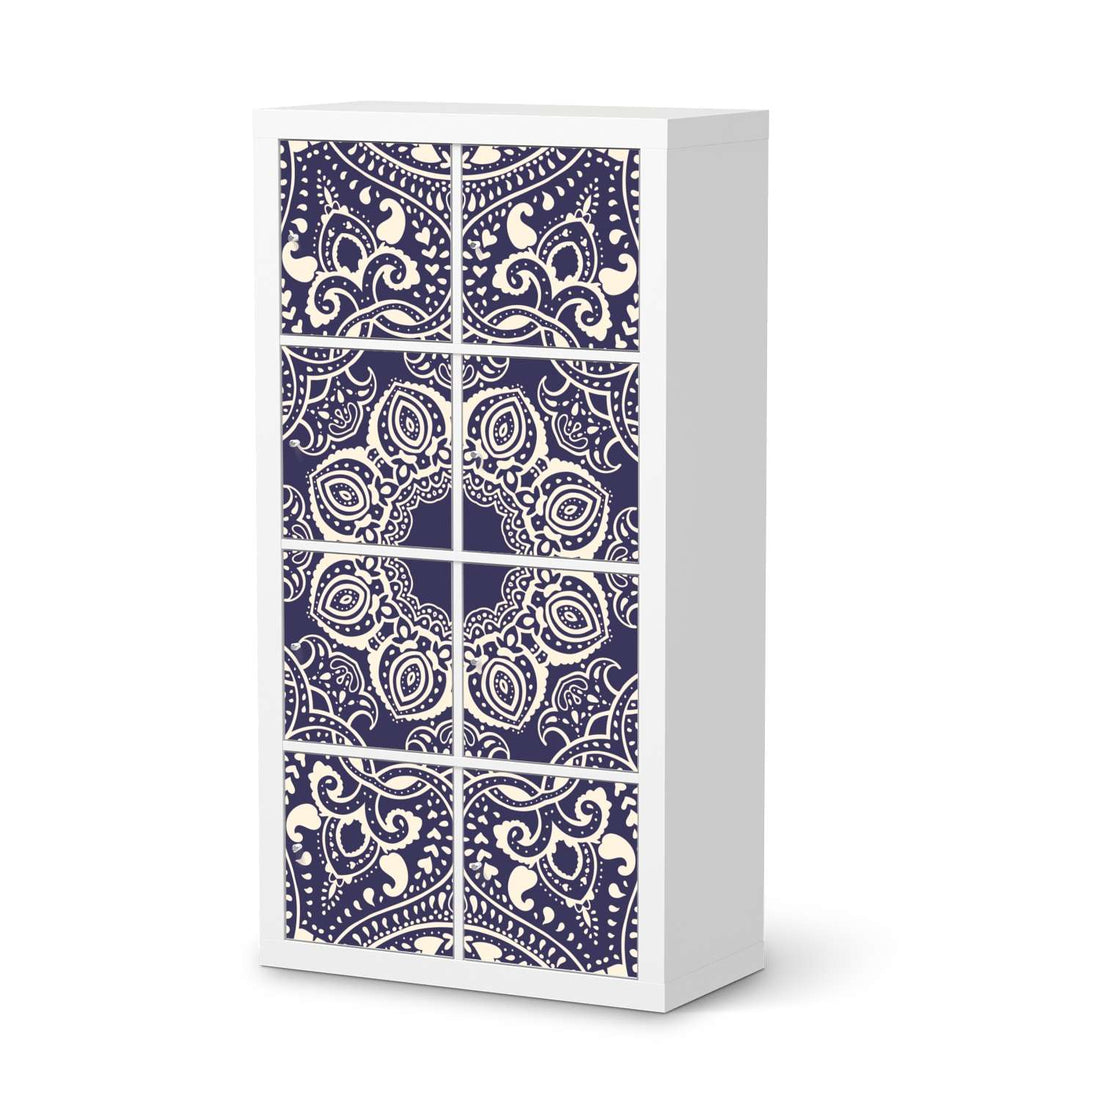 Folie für Möbel Blue Mandala - IKEA Kallax Regal 8 Türen  - weiss